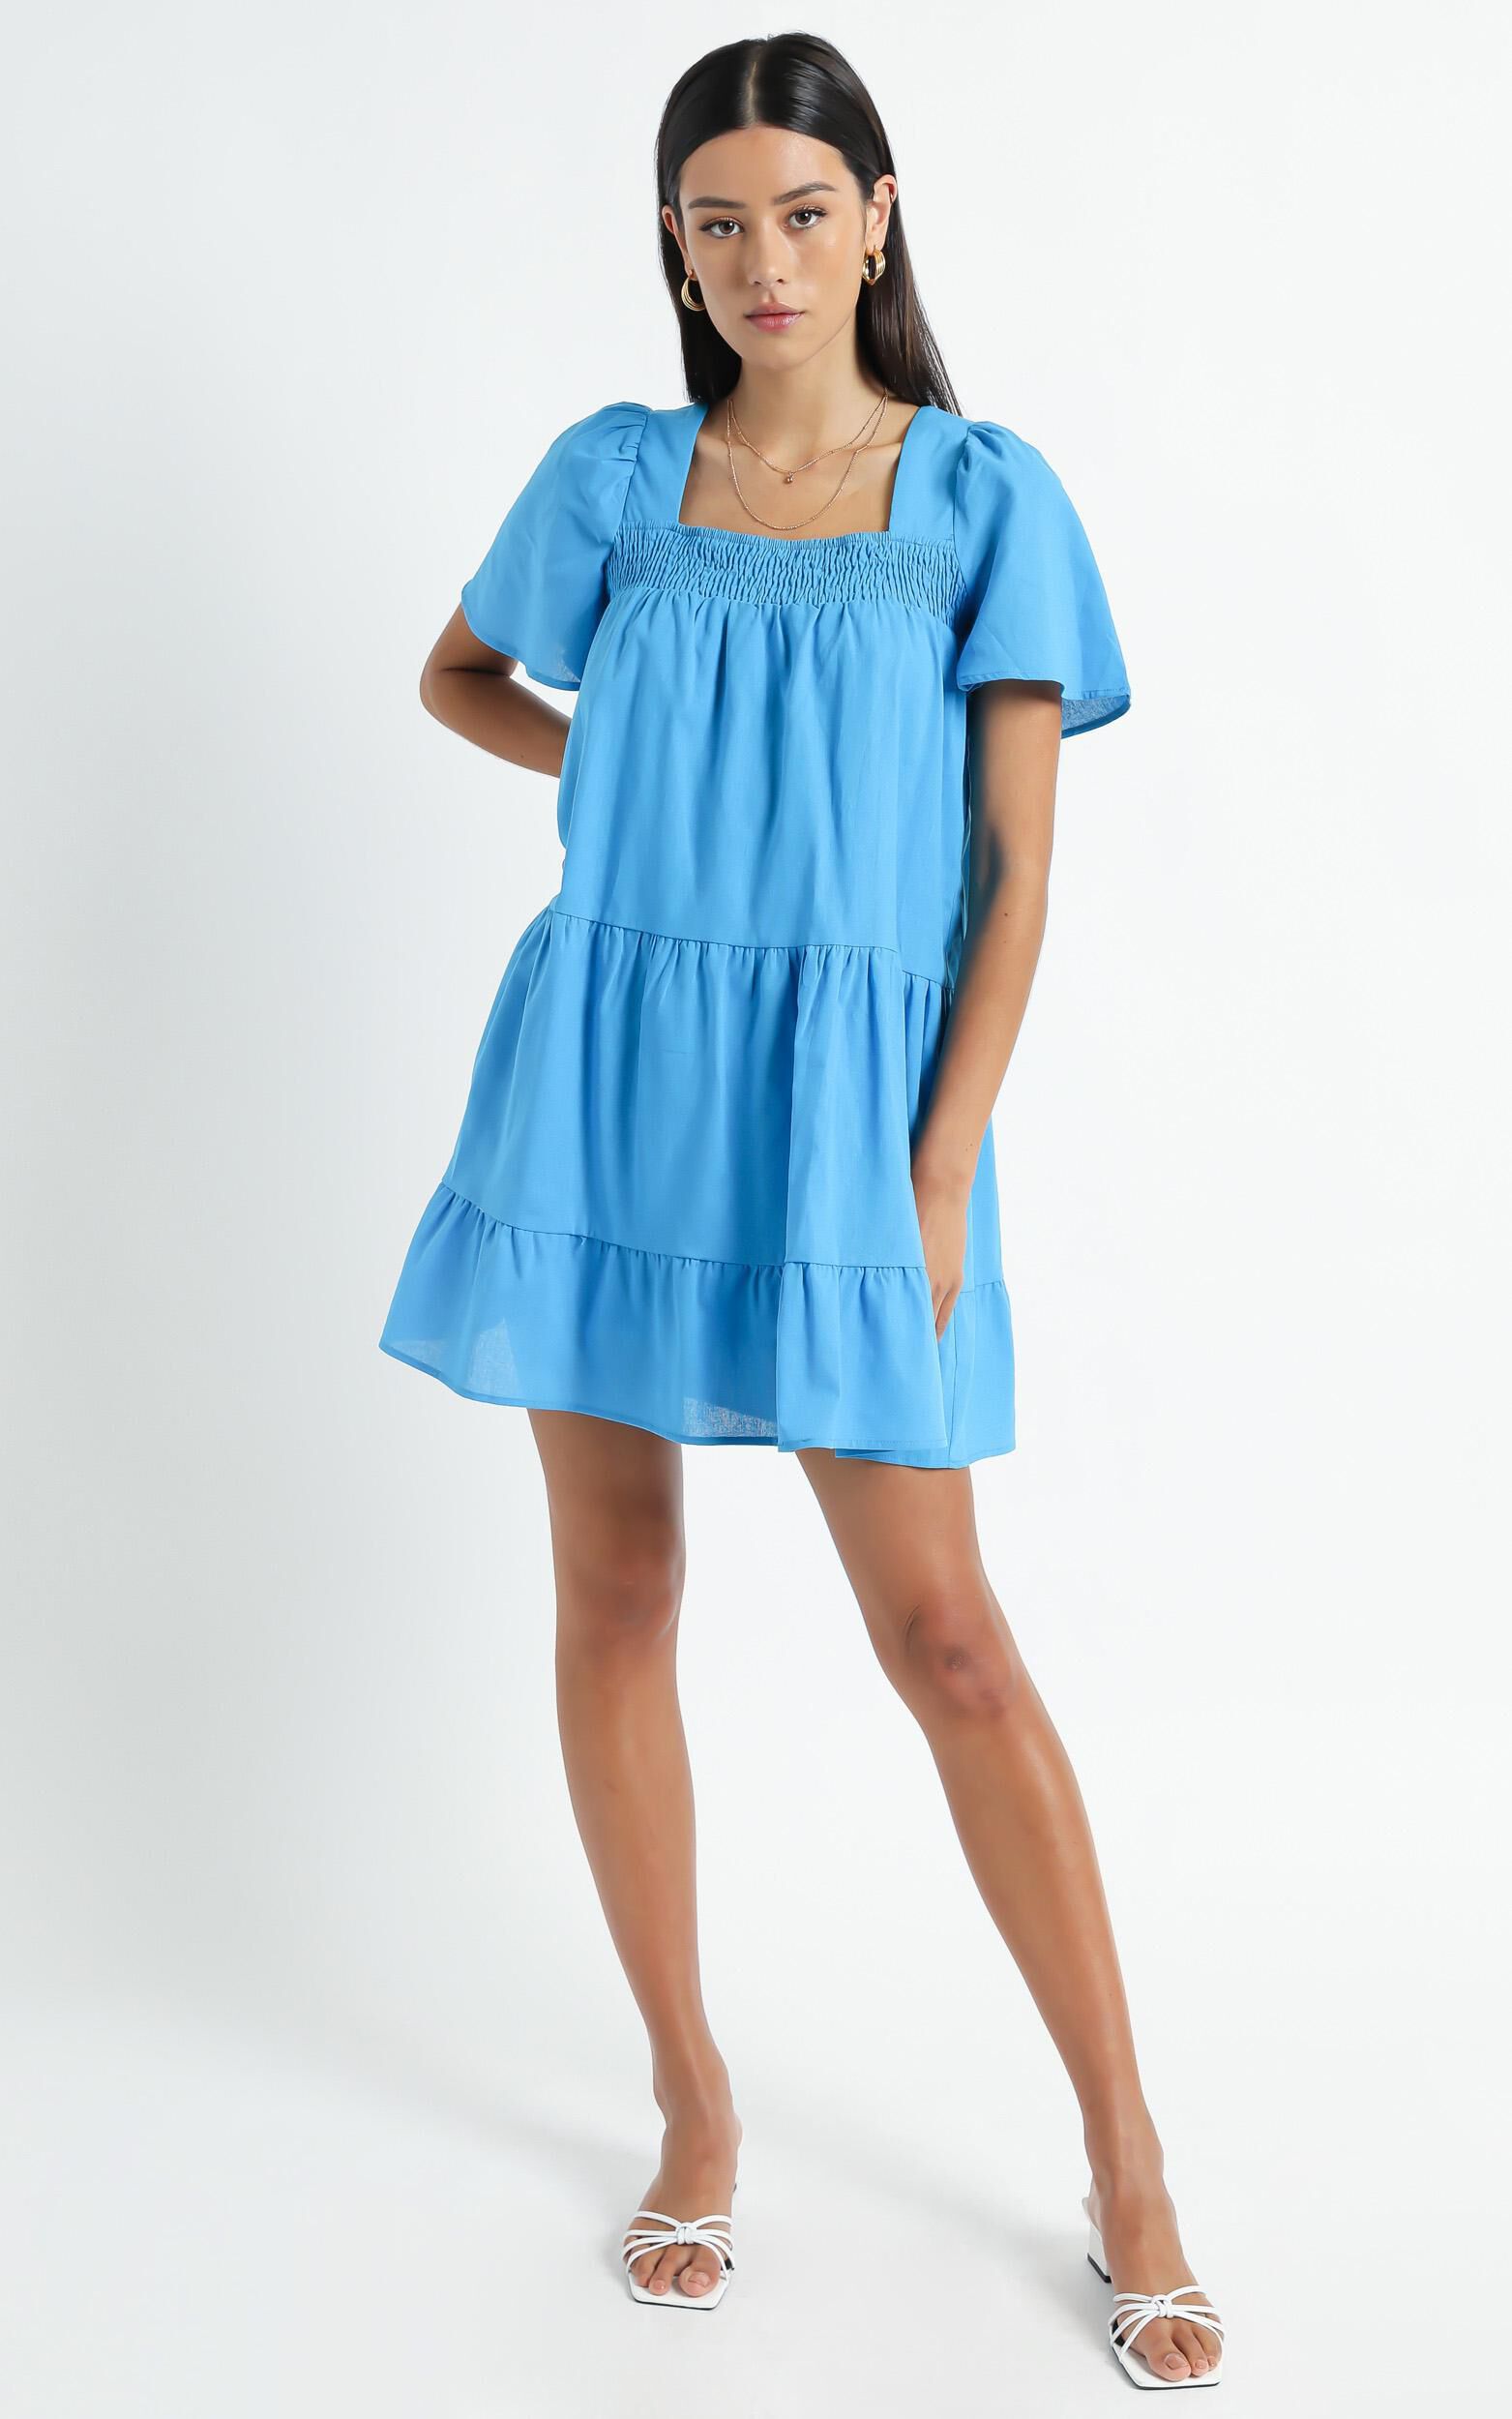 Donya Dress in Blue | Showpo USA